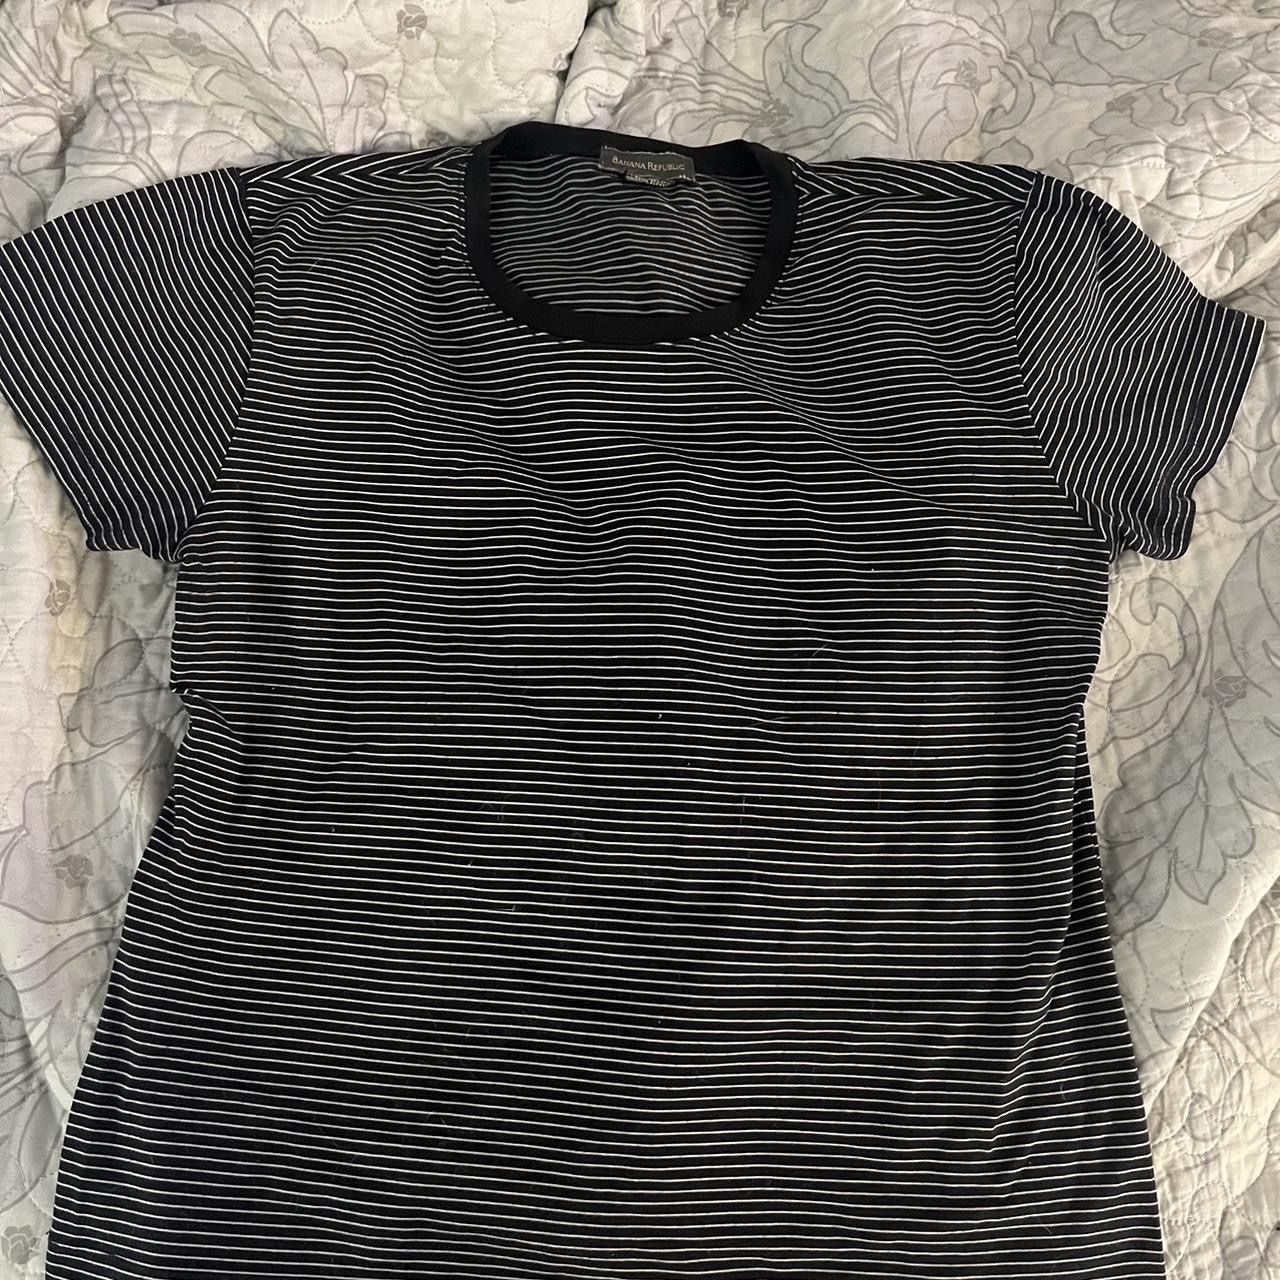 Banana Republic Black & White Striped stretchy Top T shirt blouse size L